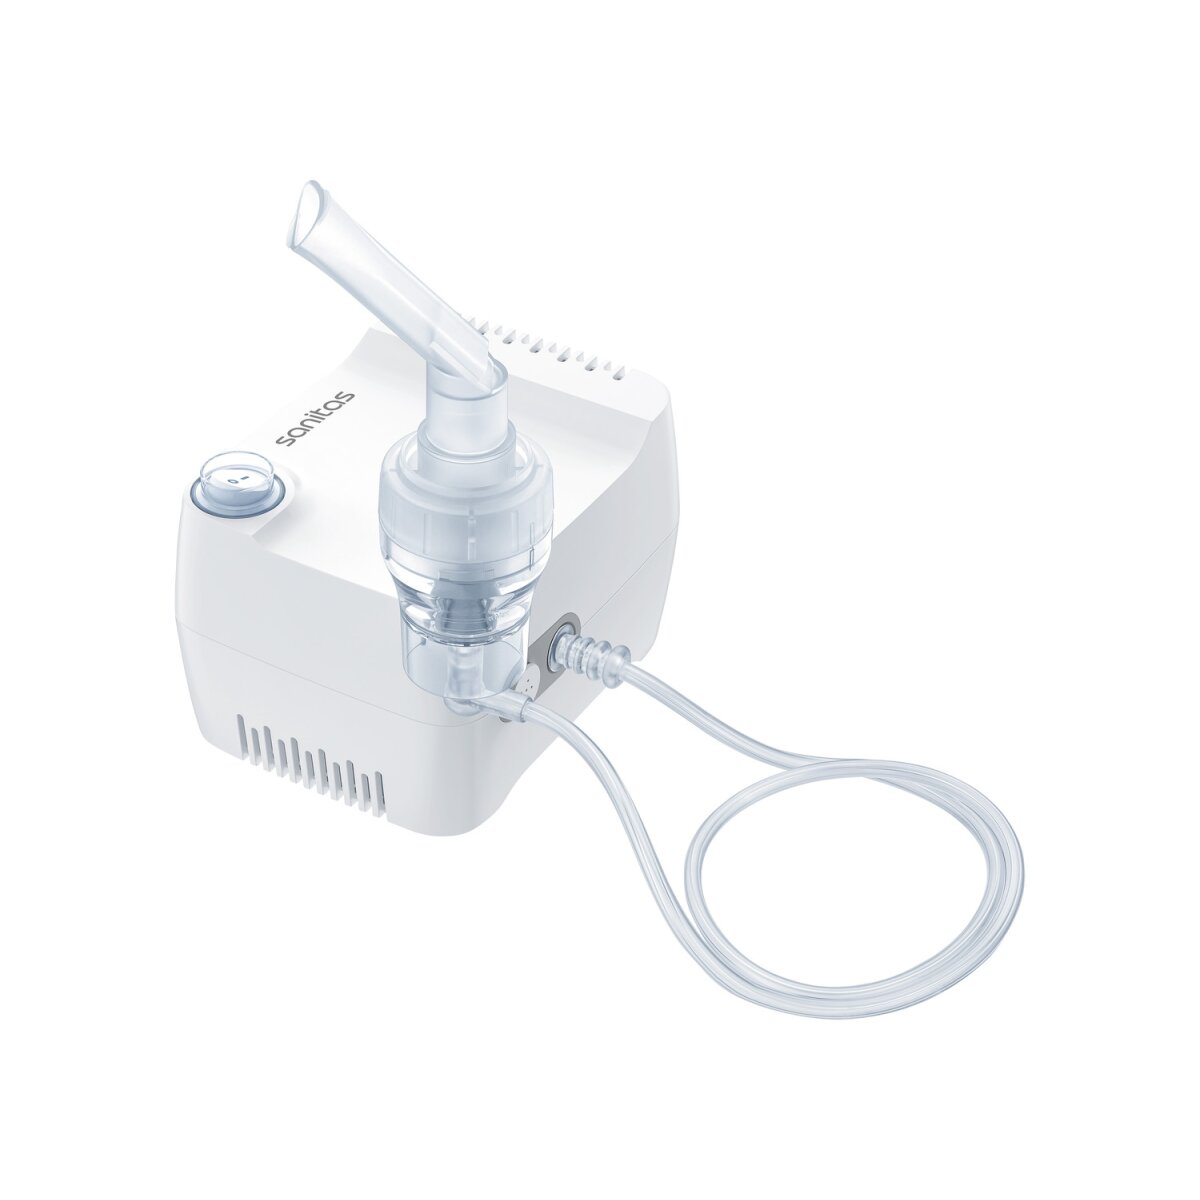 15,99 Mini-Inhalator sehr - B-Ware € mit Kompressor-Drucklufttechnologie gut, SANITAS